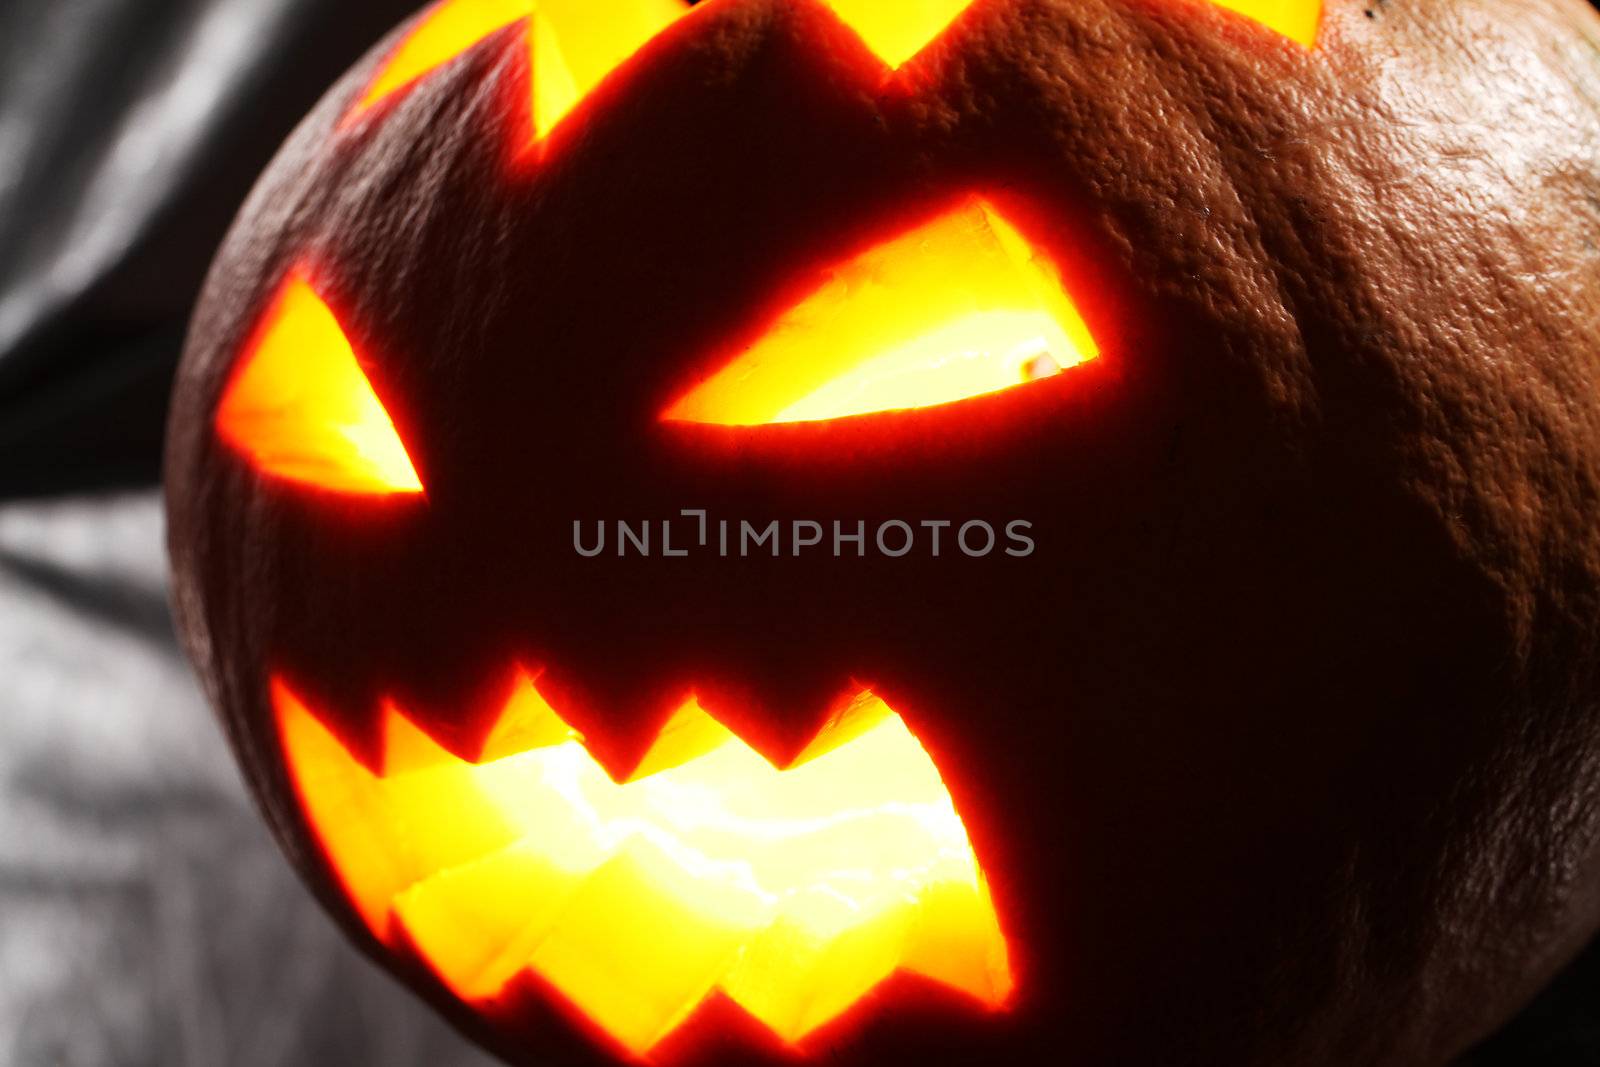 Illuminated halloween pumpkin on a black background